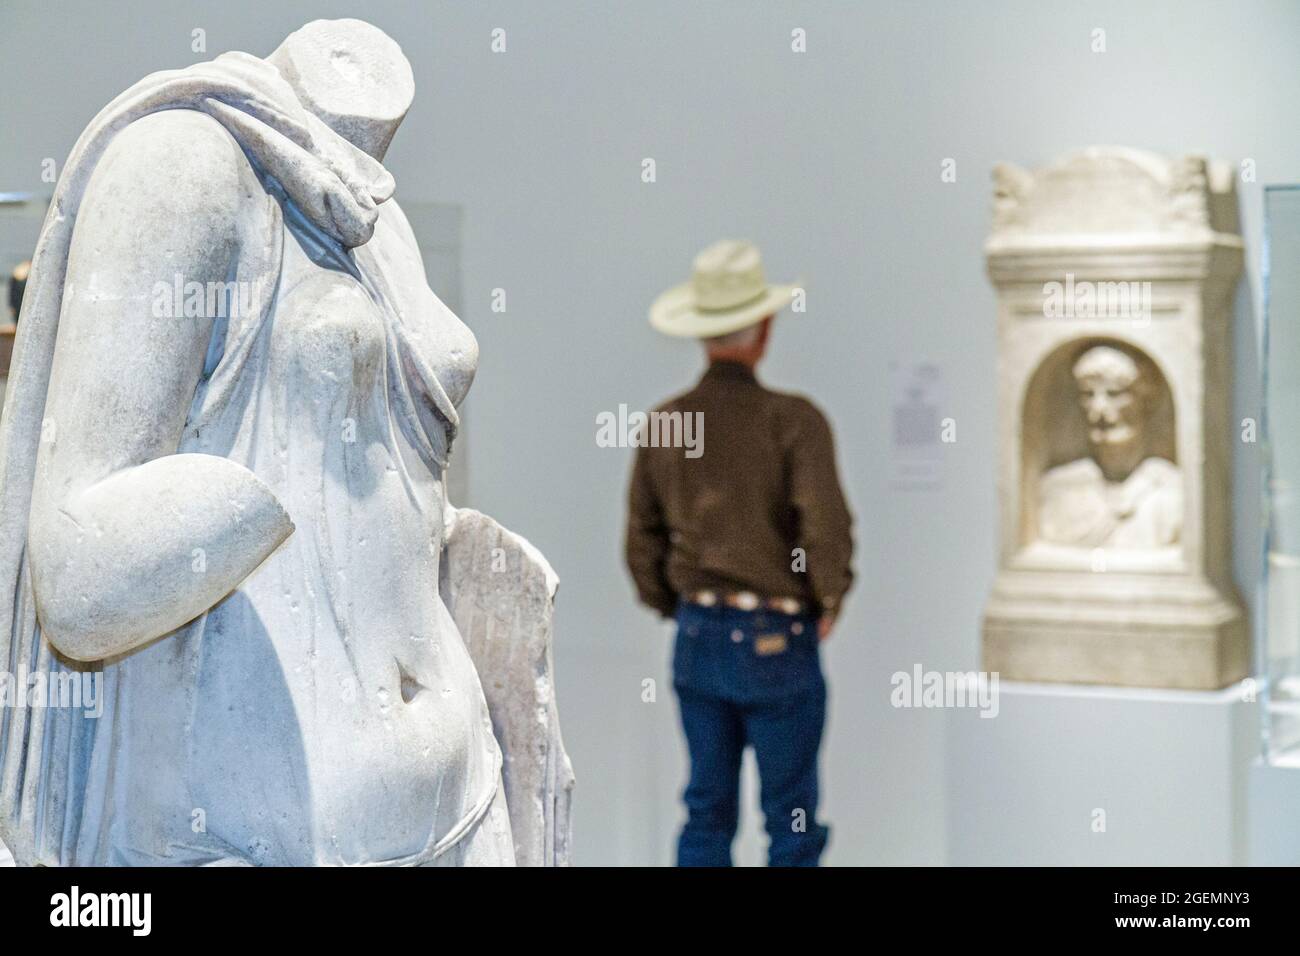 Florida Tampa Museum of Art, sculpture grecque classique cow-boy homme homme regardant à l'intérieur, Banque D'Images